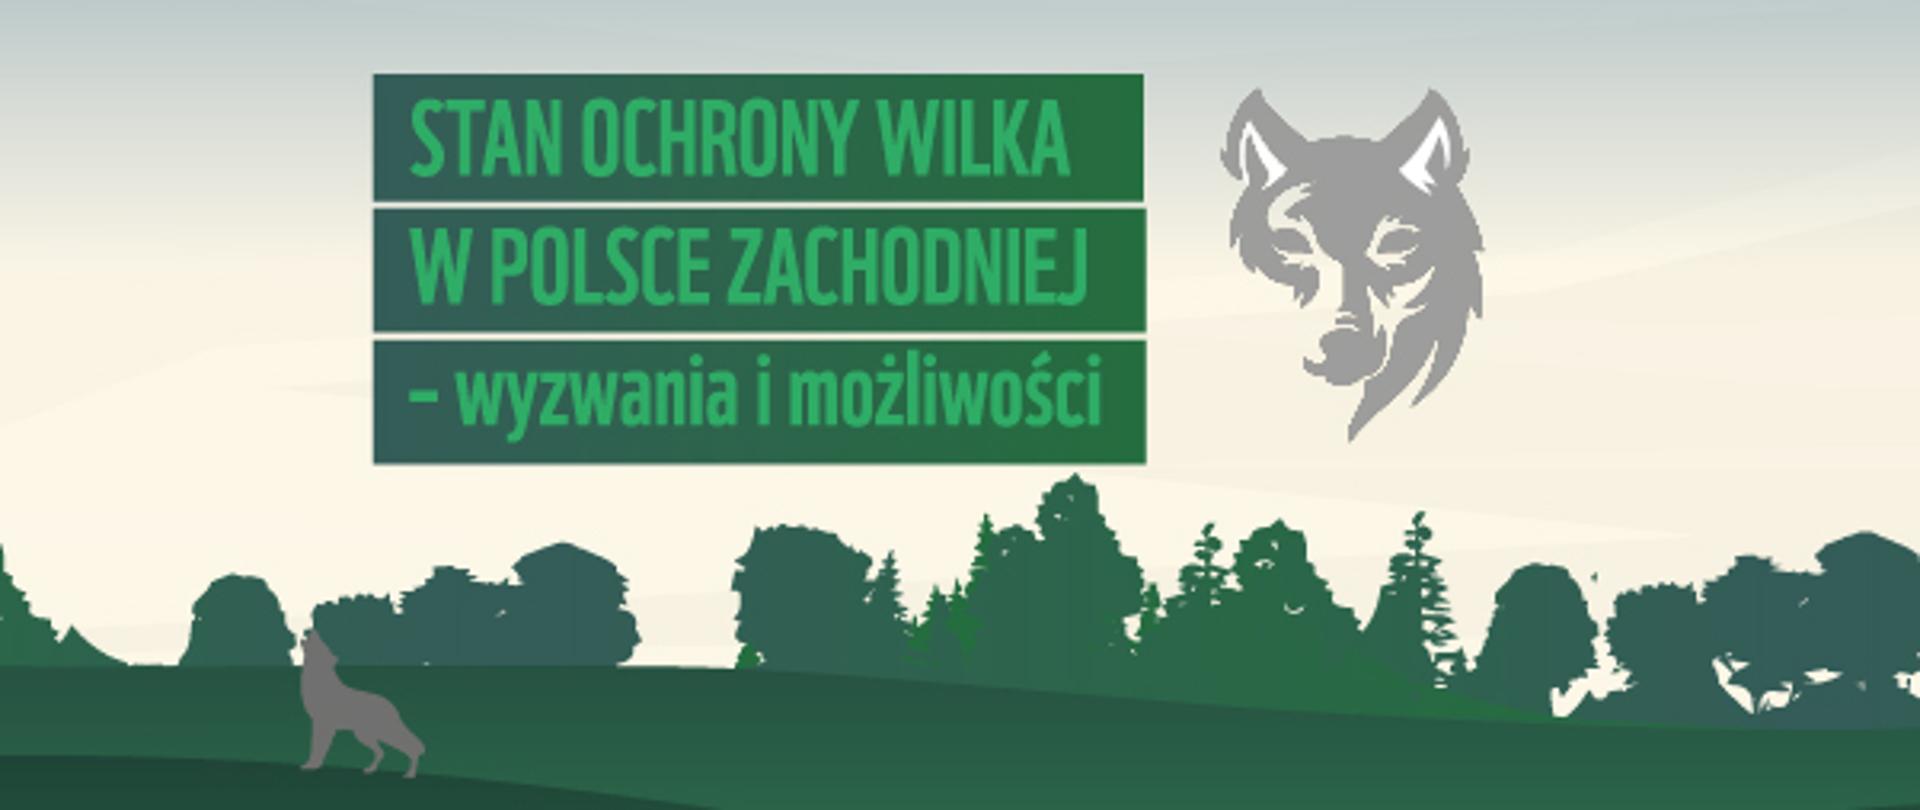 Plakat webinarium napis: Stan ochrony wilka w Polsce zachodniej- wyzwania i możliwości, po lewej stronie u góry rysunek wilka, na dole rysunek ogrodzonego stada owiec. Na dole loga organizatorów wydarzenia.